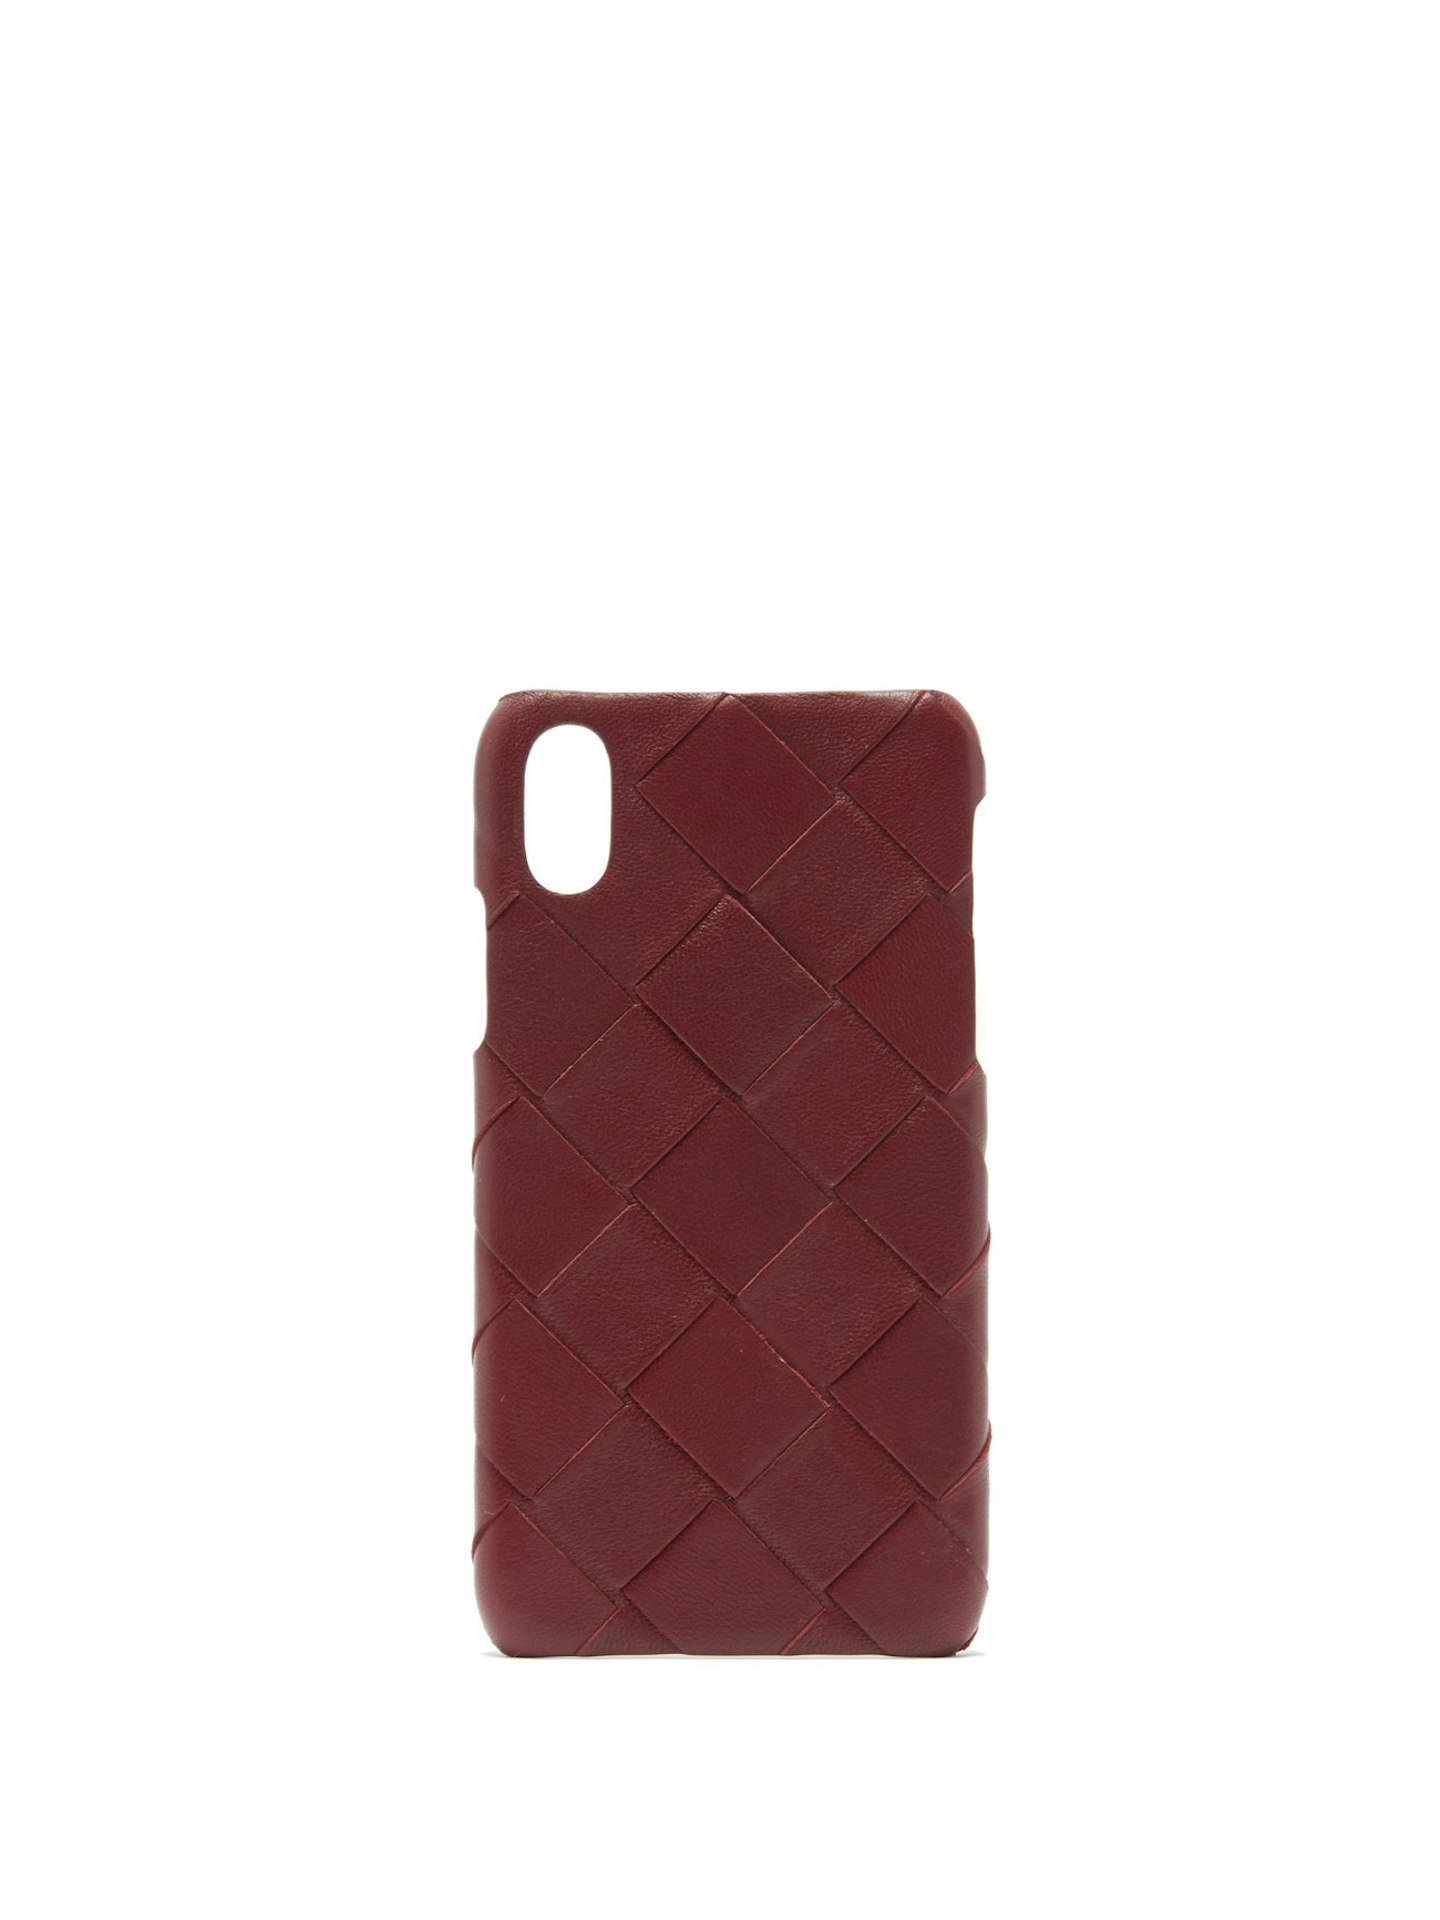 Bottega Veneta, Intrecciato iPhone X leather phone case, £345